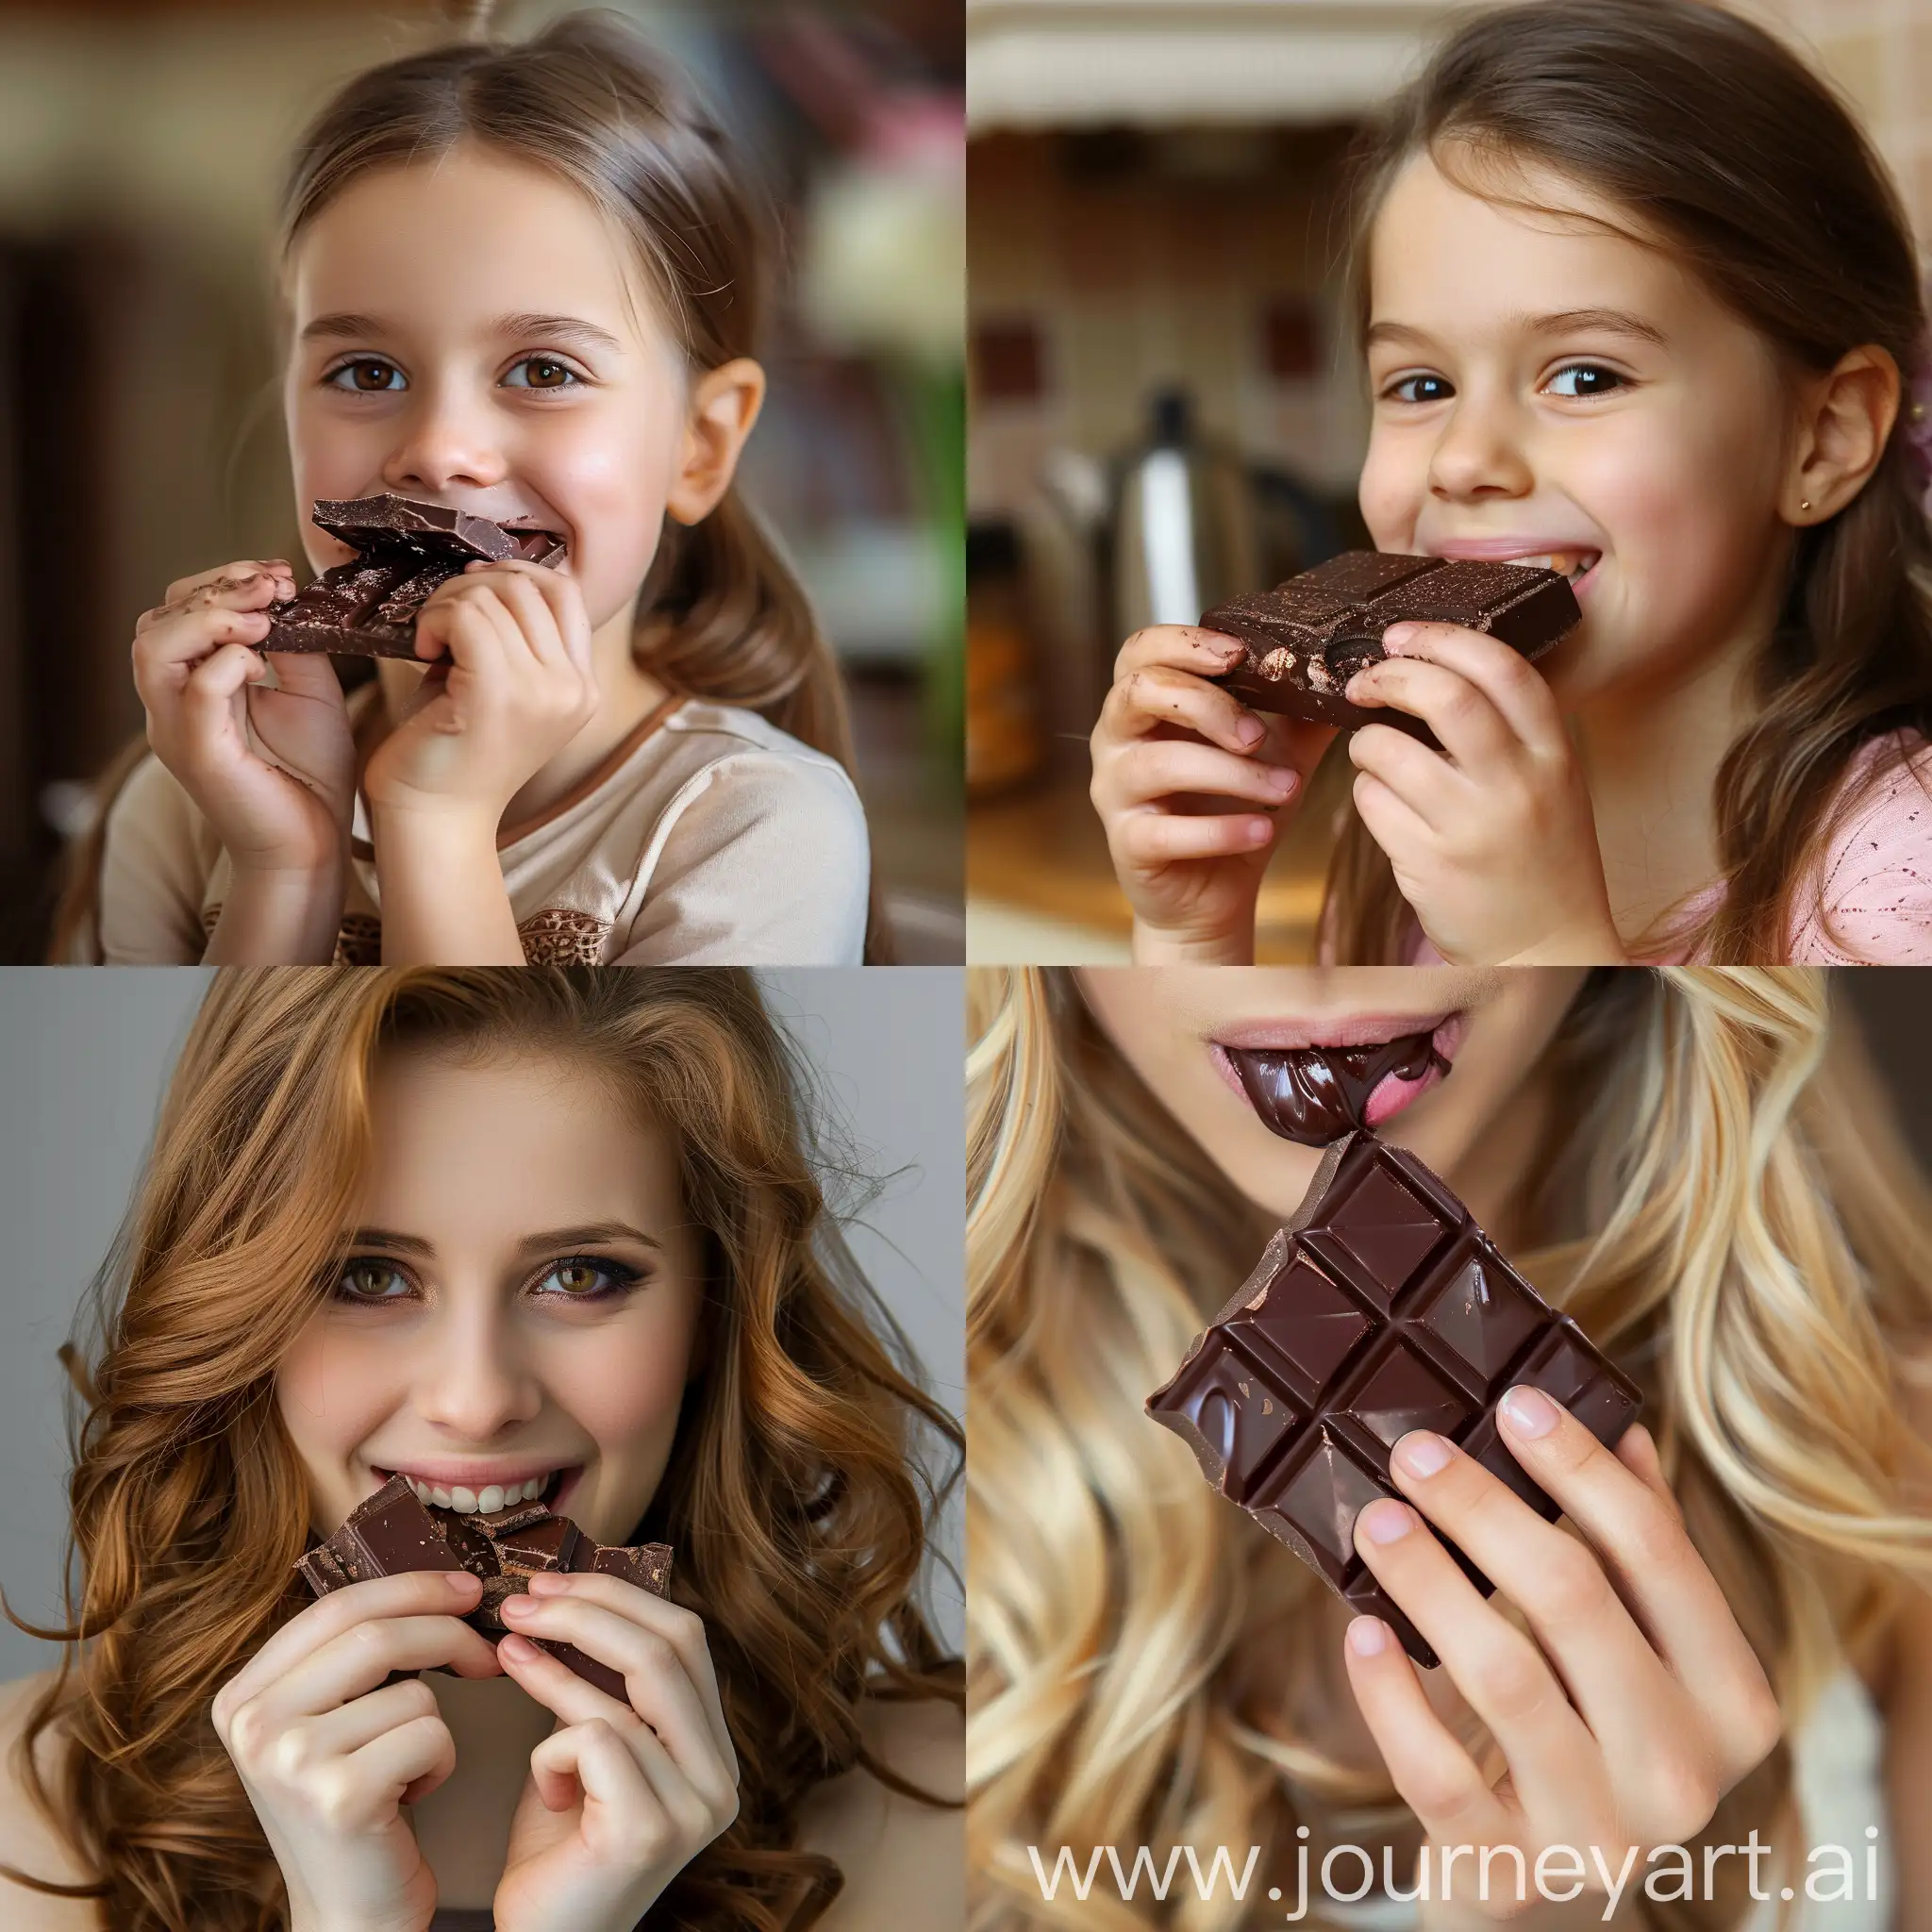 Young-Girl-Enjoying-Chocolate-Delight